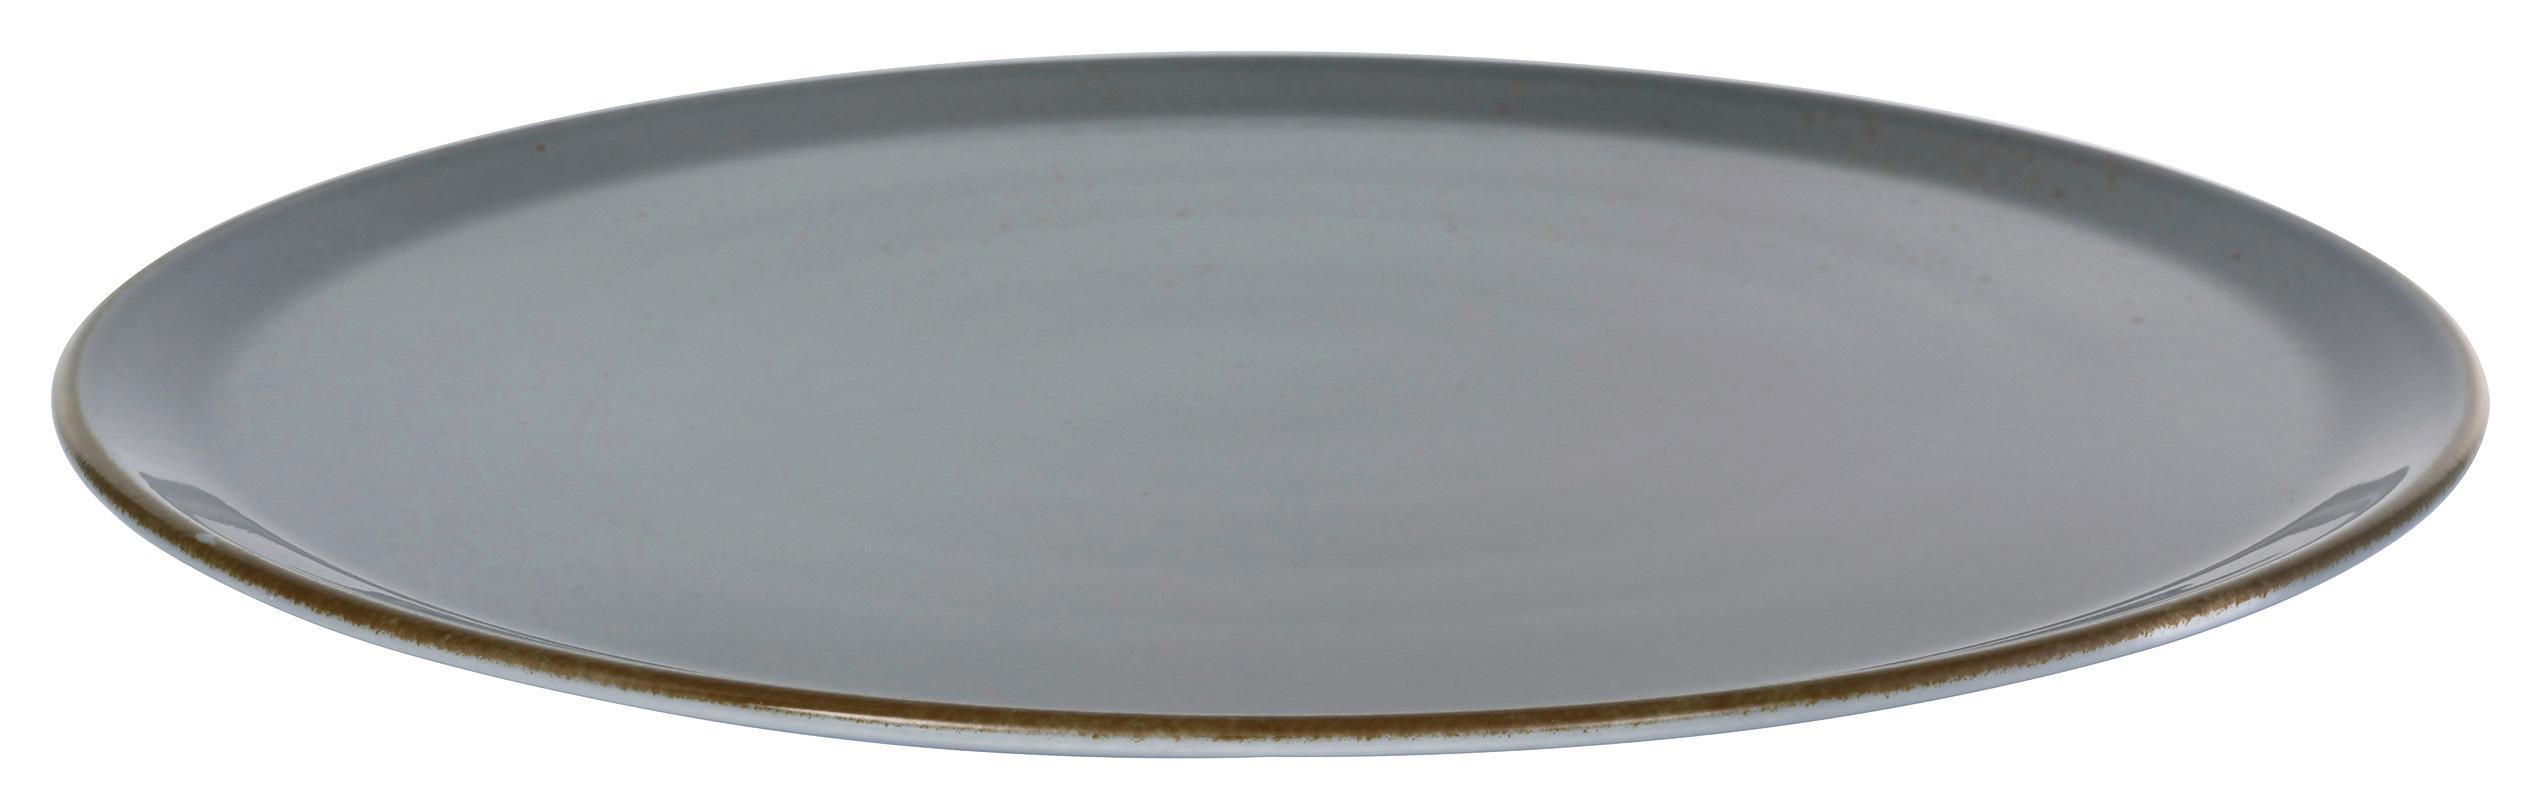 Talíř Na Pizzu Capri, Ø: 33cm - šedá, Moderní, keramika (33/33/2cm) - Premium Living